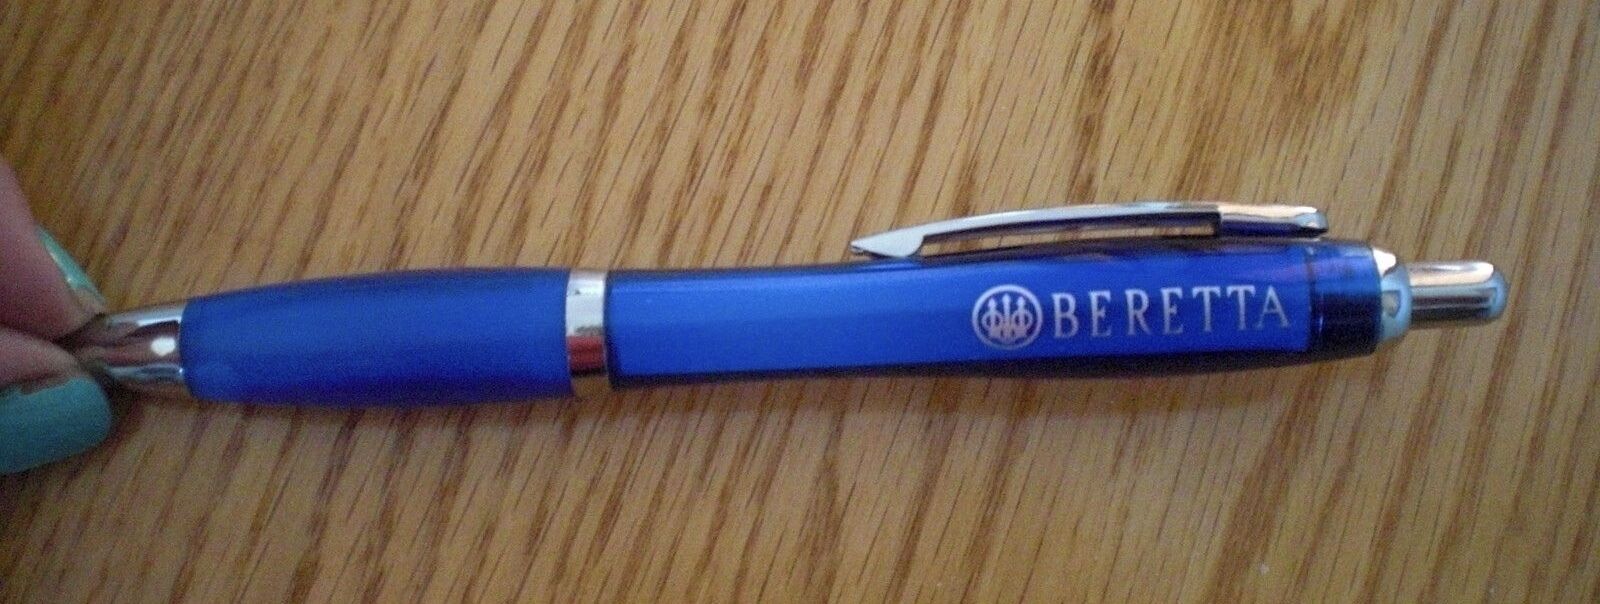 Beretta Pen -rare Collectible  NIB  